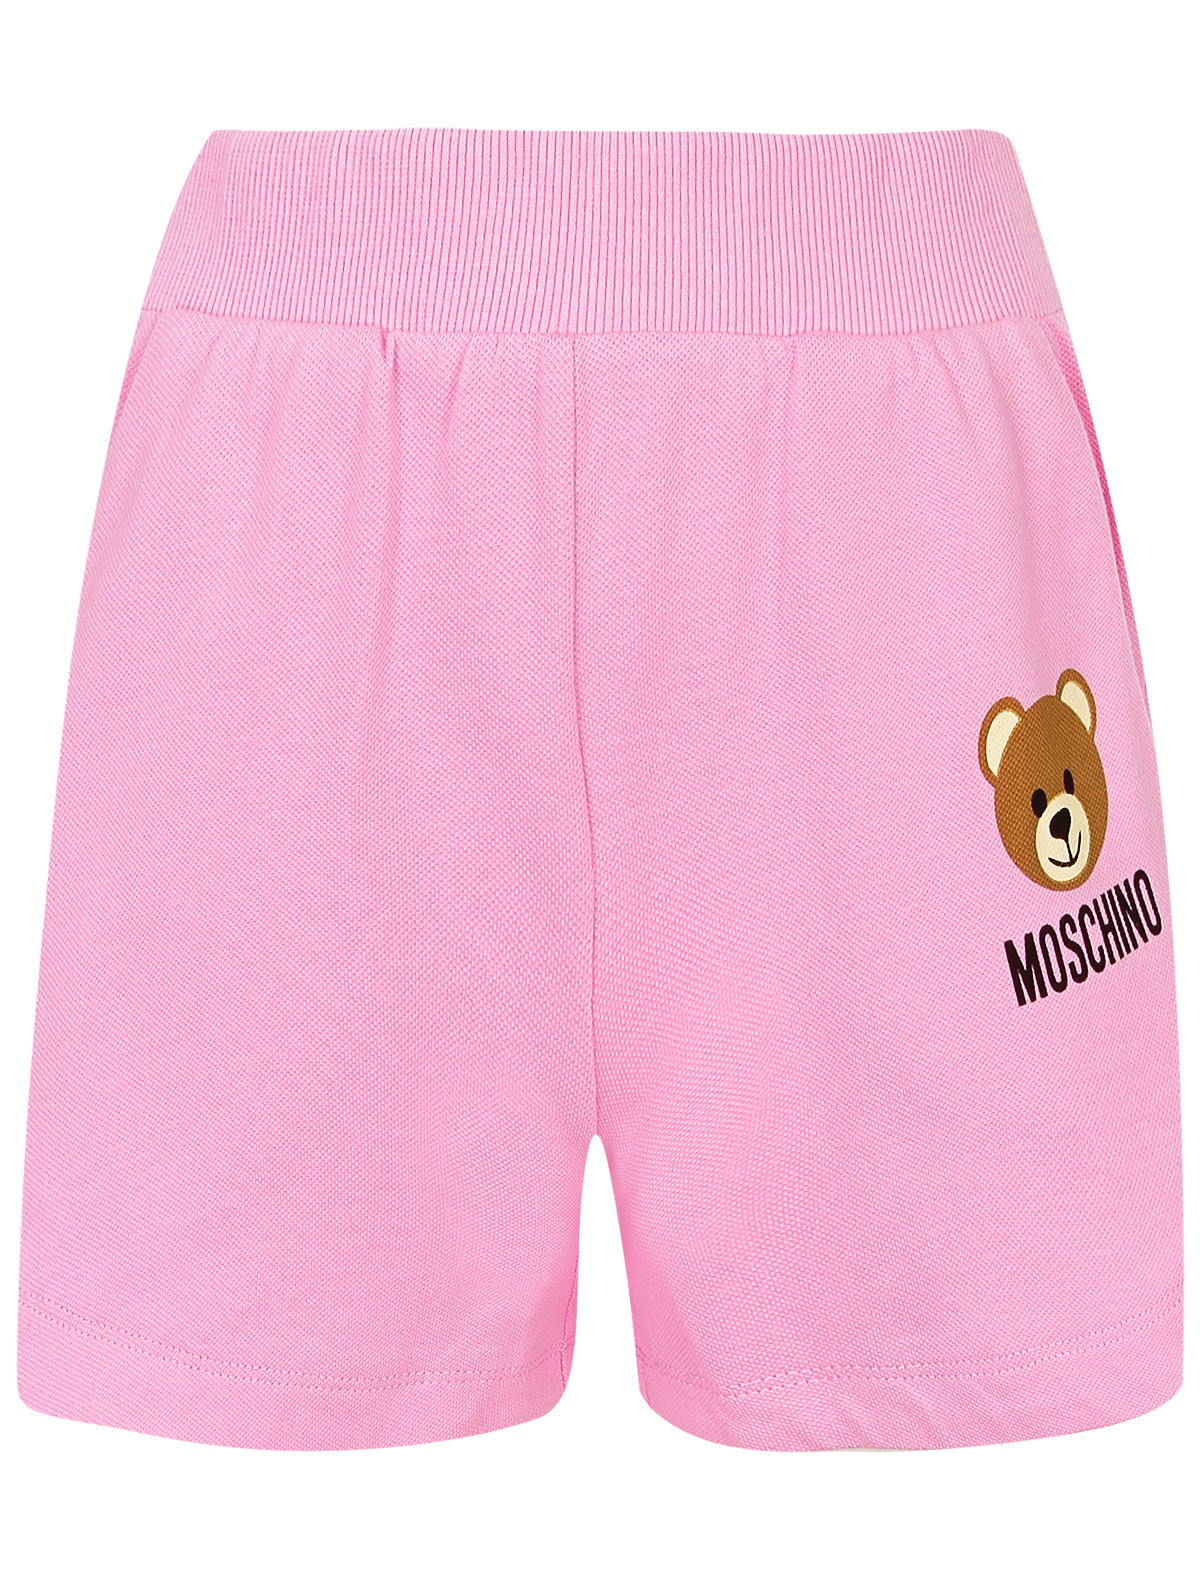 шорты moschino для девочки, розовые